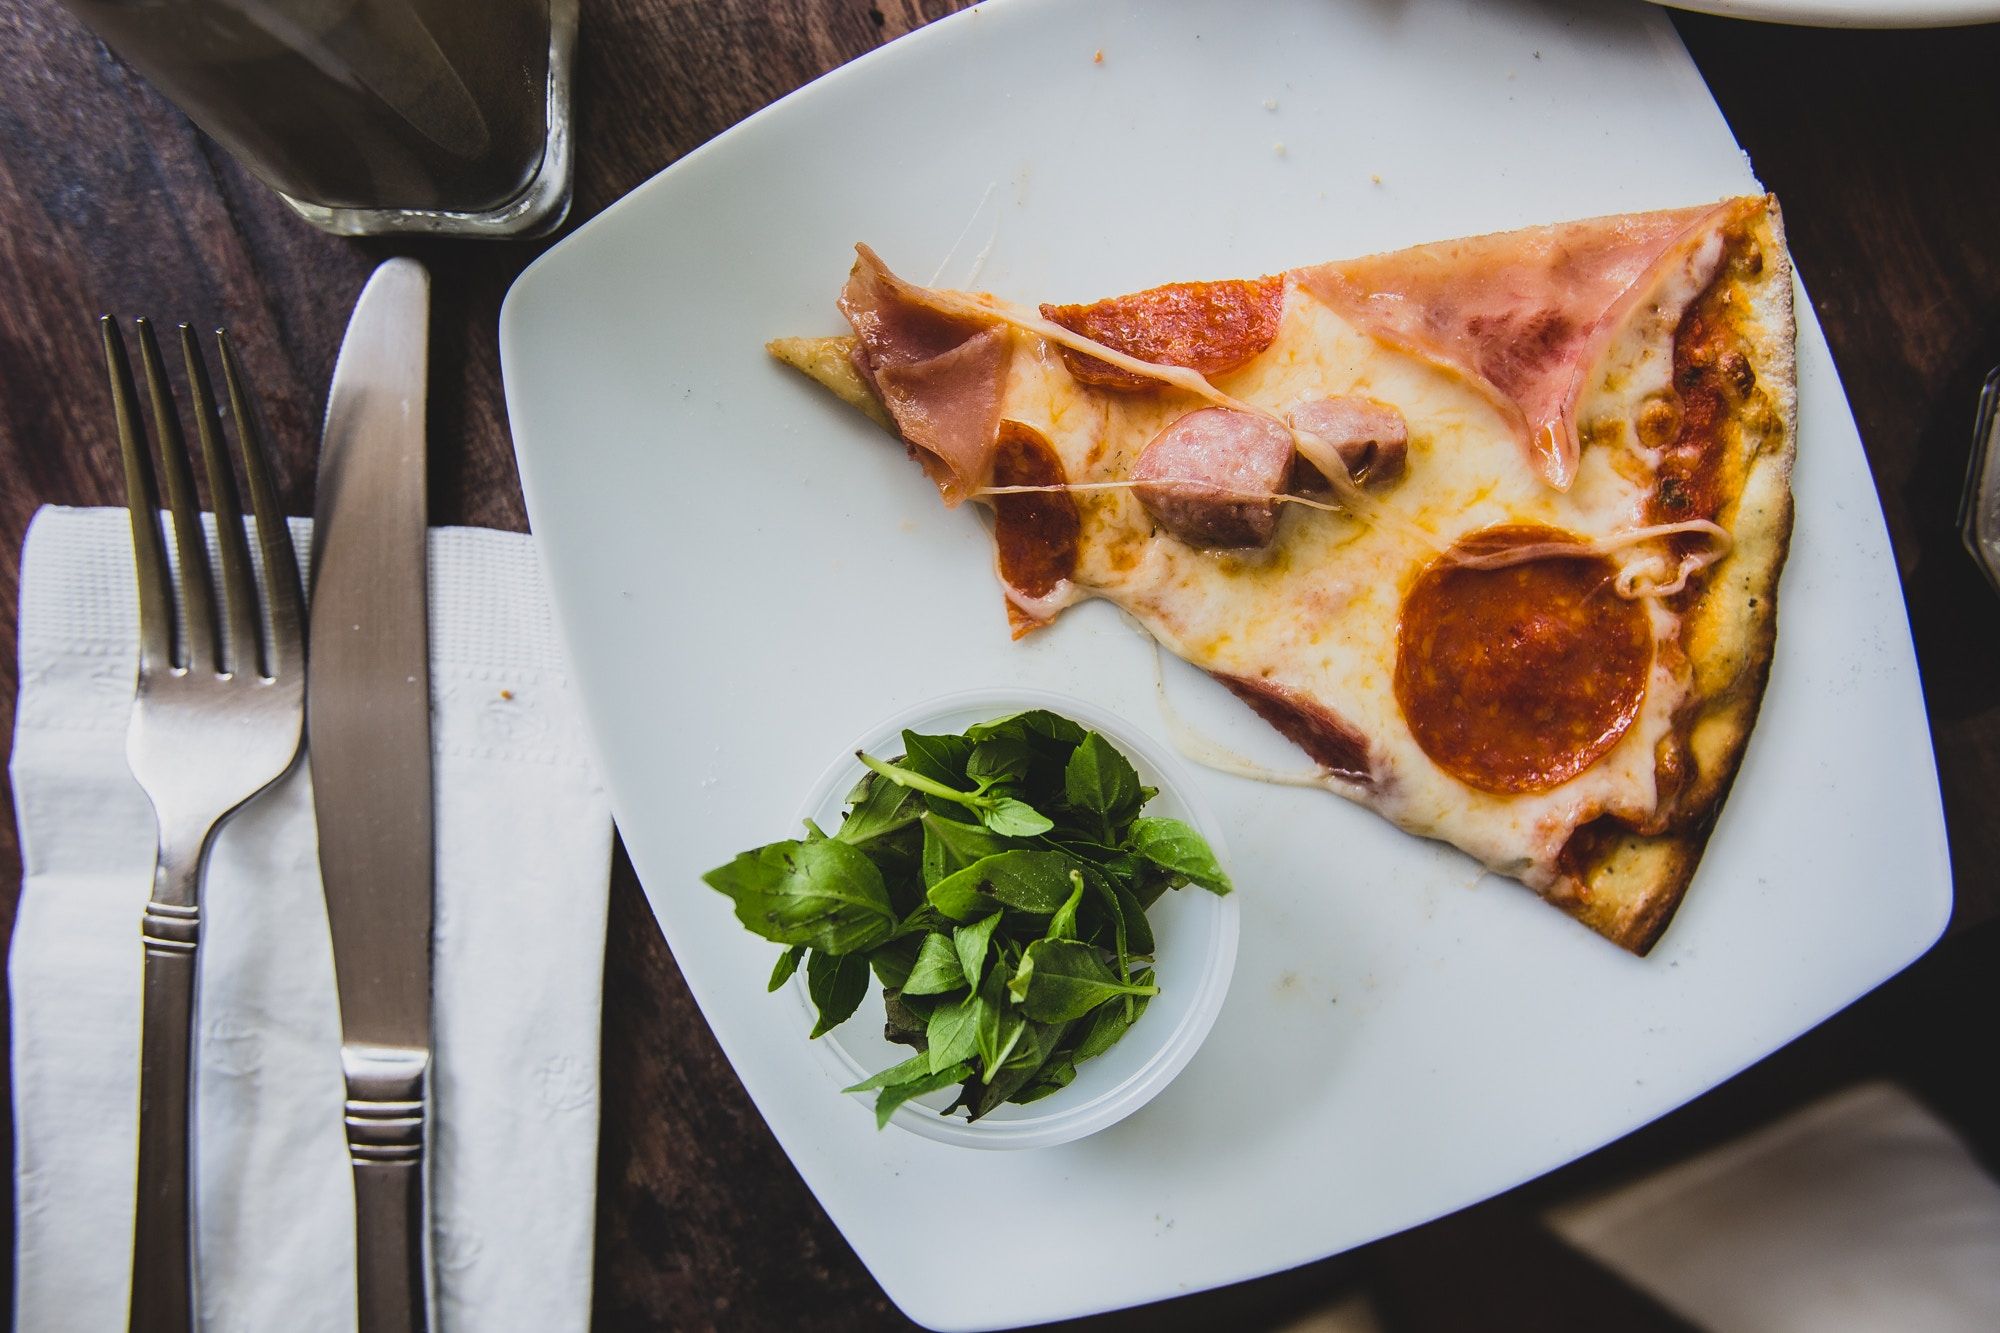 Hãy đến và khám phá những hình ảnh tuyệt đẹp về Pizza và Pasta của chúng tôi - một sự kết hợp hoàn hảo giữa nơi nào bạn có thể thưởng thức các món ăn ngon tuyệt và khung cảnh đẹp tuyệt vời. Đảm bảo rằng bạn sẽ phải công nhận cái gì khi thưởng thức hai món ăn nổi tiếng này. 